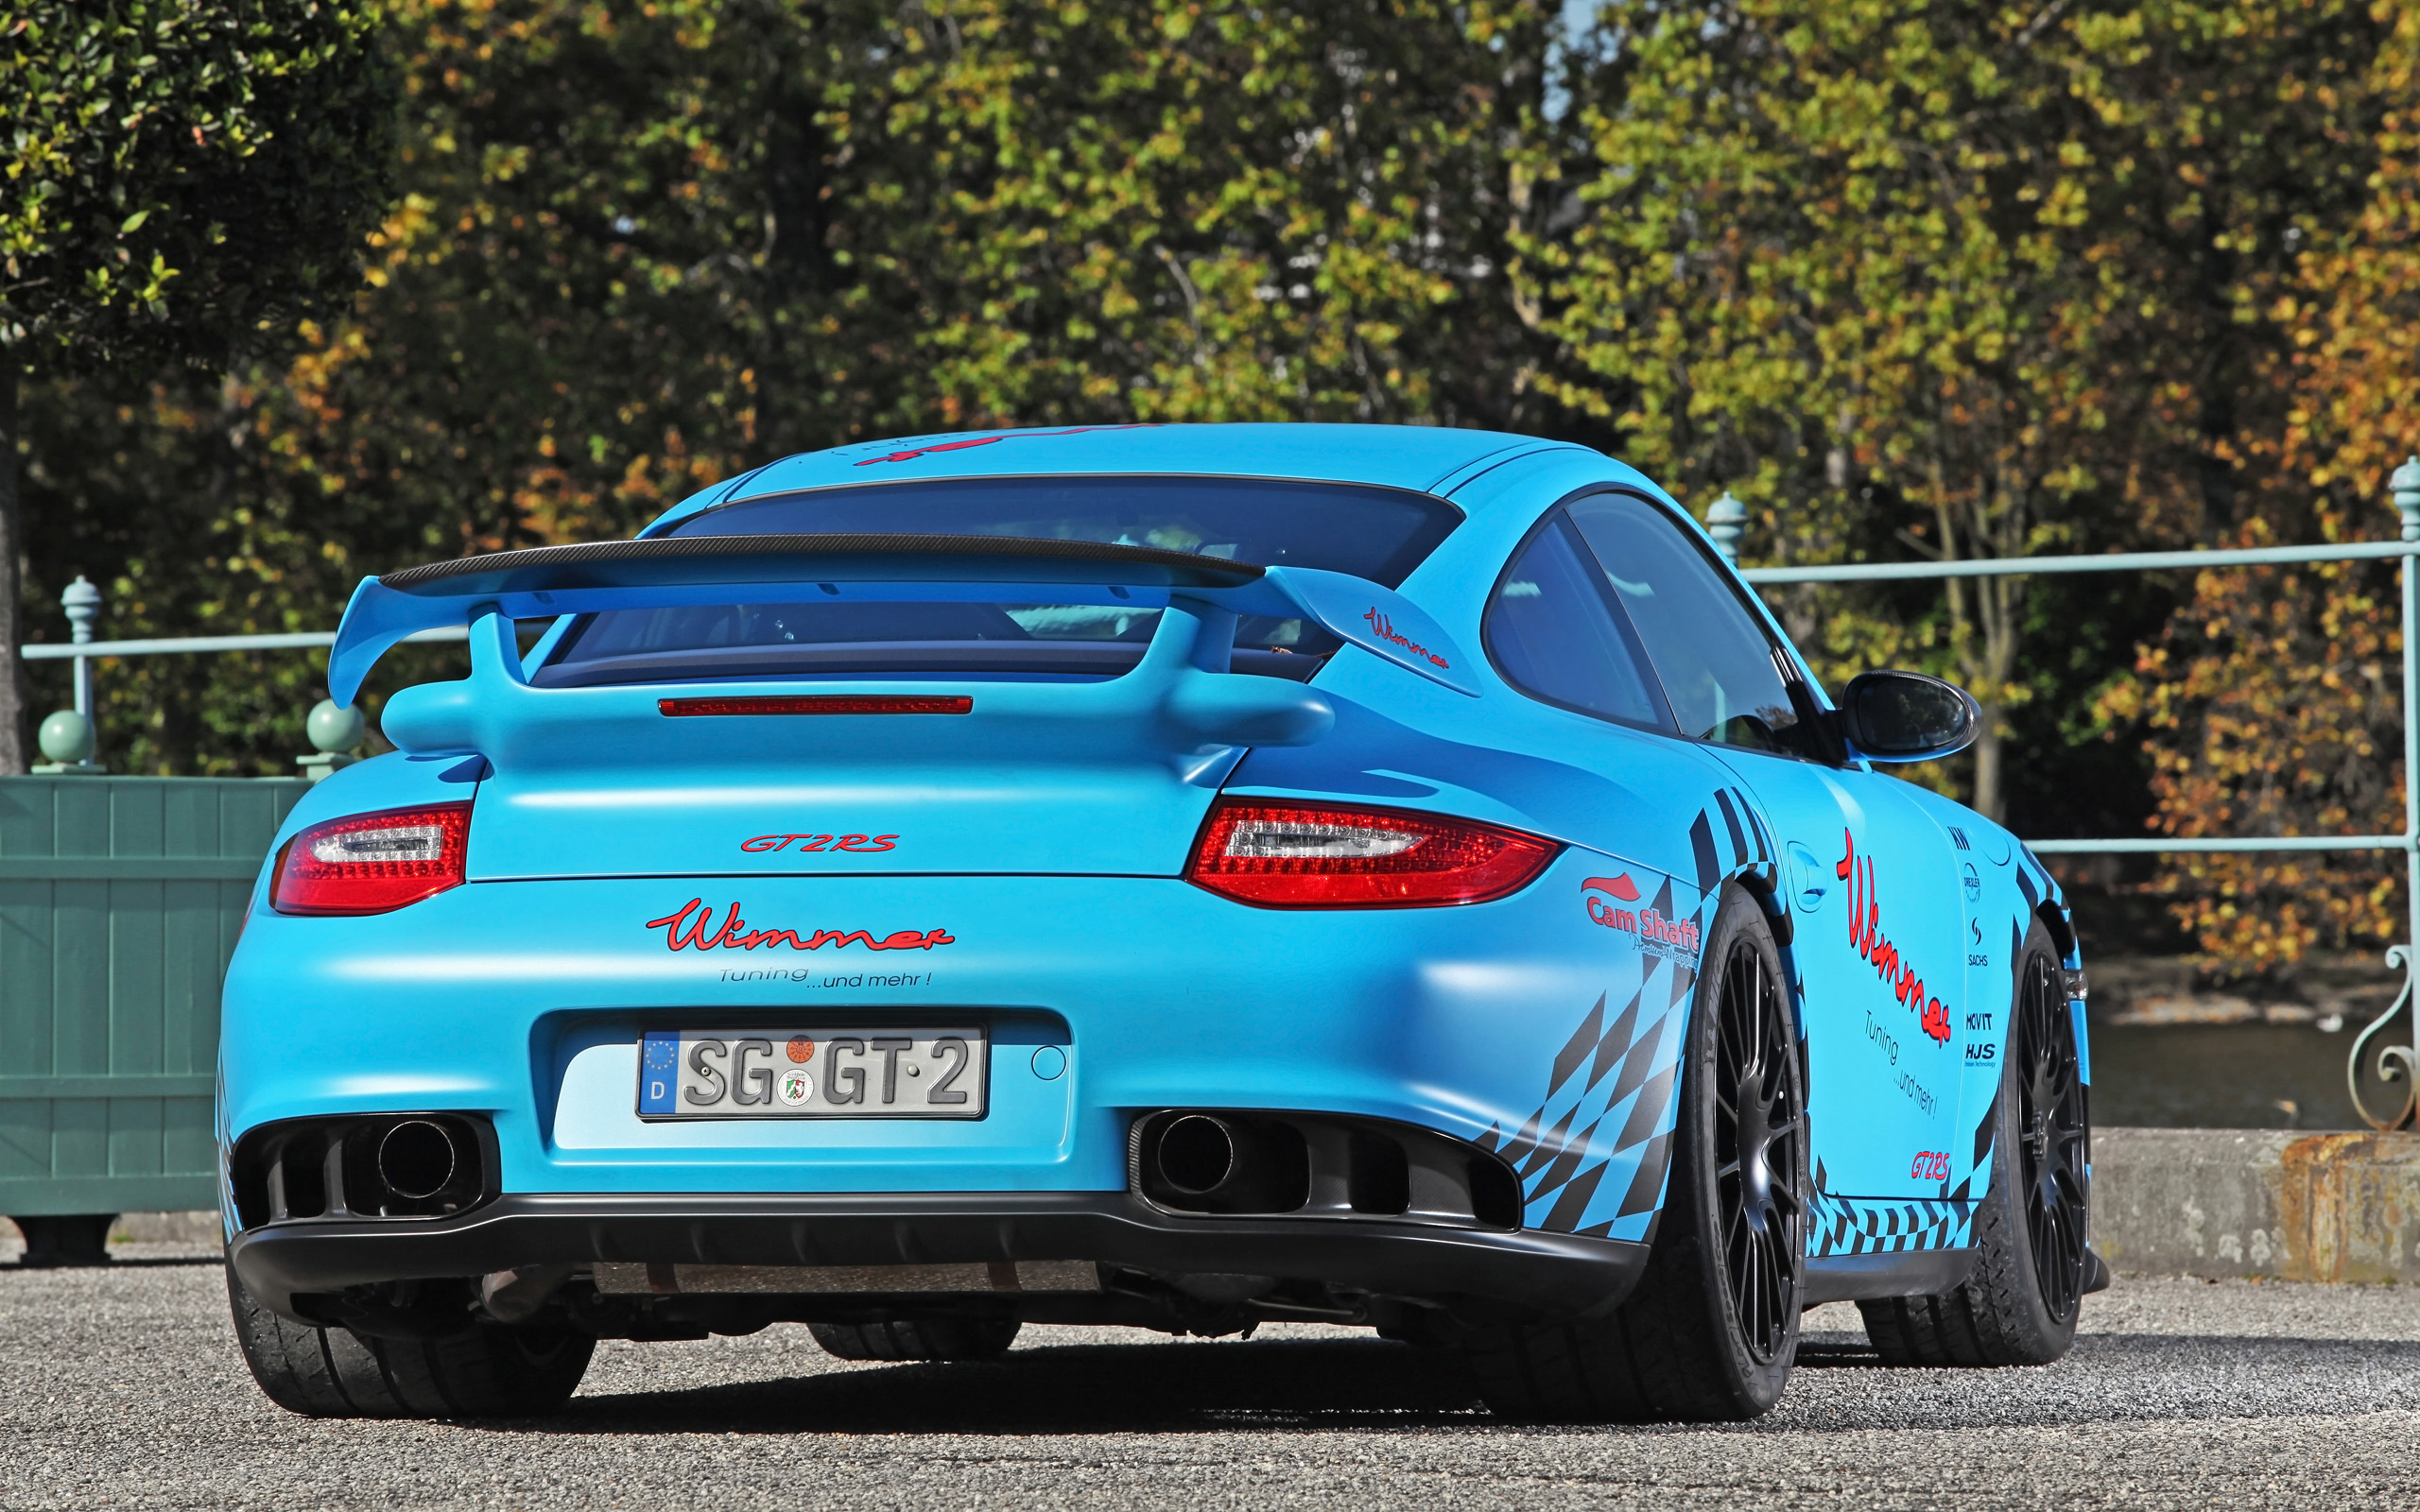 2011, Wimmer, Porsche, 911, Gt2, R s, Tuning, Jd Wallpaper